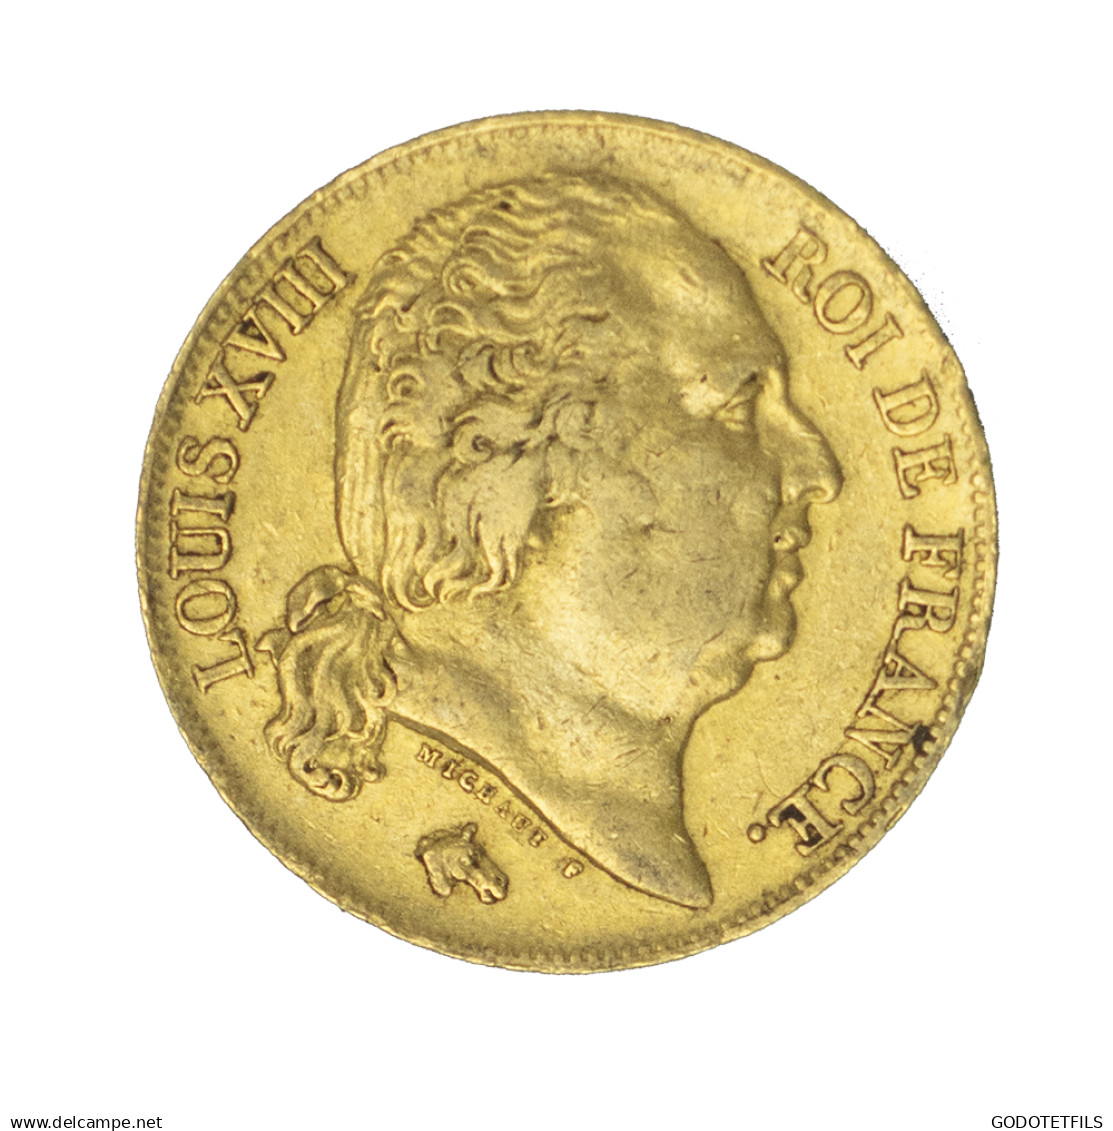 Louis XVIII-20 Francs 1816 Paris - 20 Francs (gold)